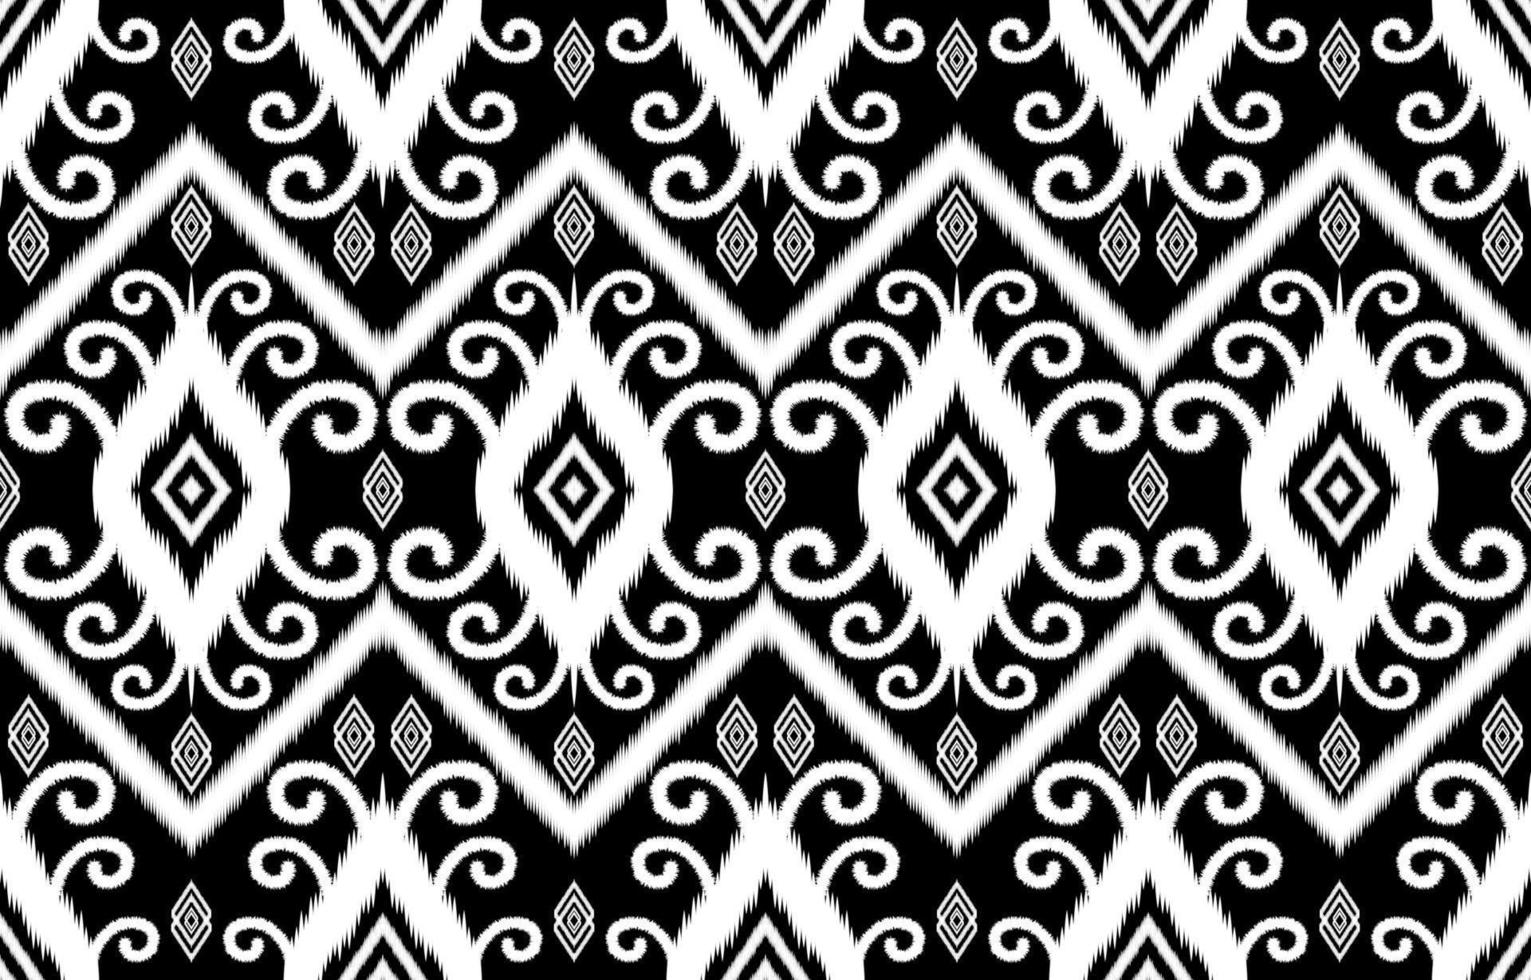 motifs ikat antiques luxueux royaux. style rétro vintage tribal ethnique géométrique. modèle sans couture de tissu textile ikat. indien africain asiatique navajo aztèque ikat abstrait noir et blanc. vecteur